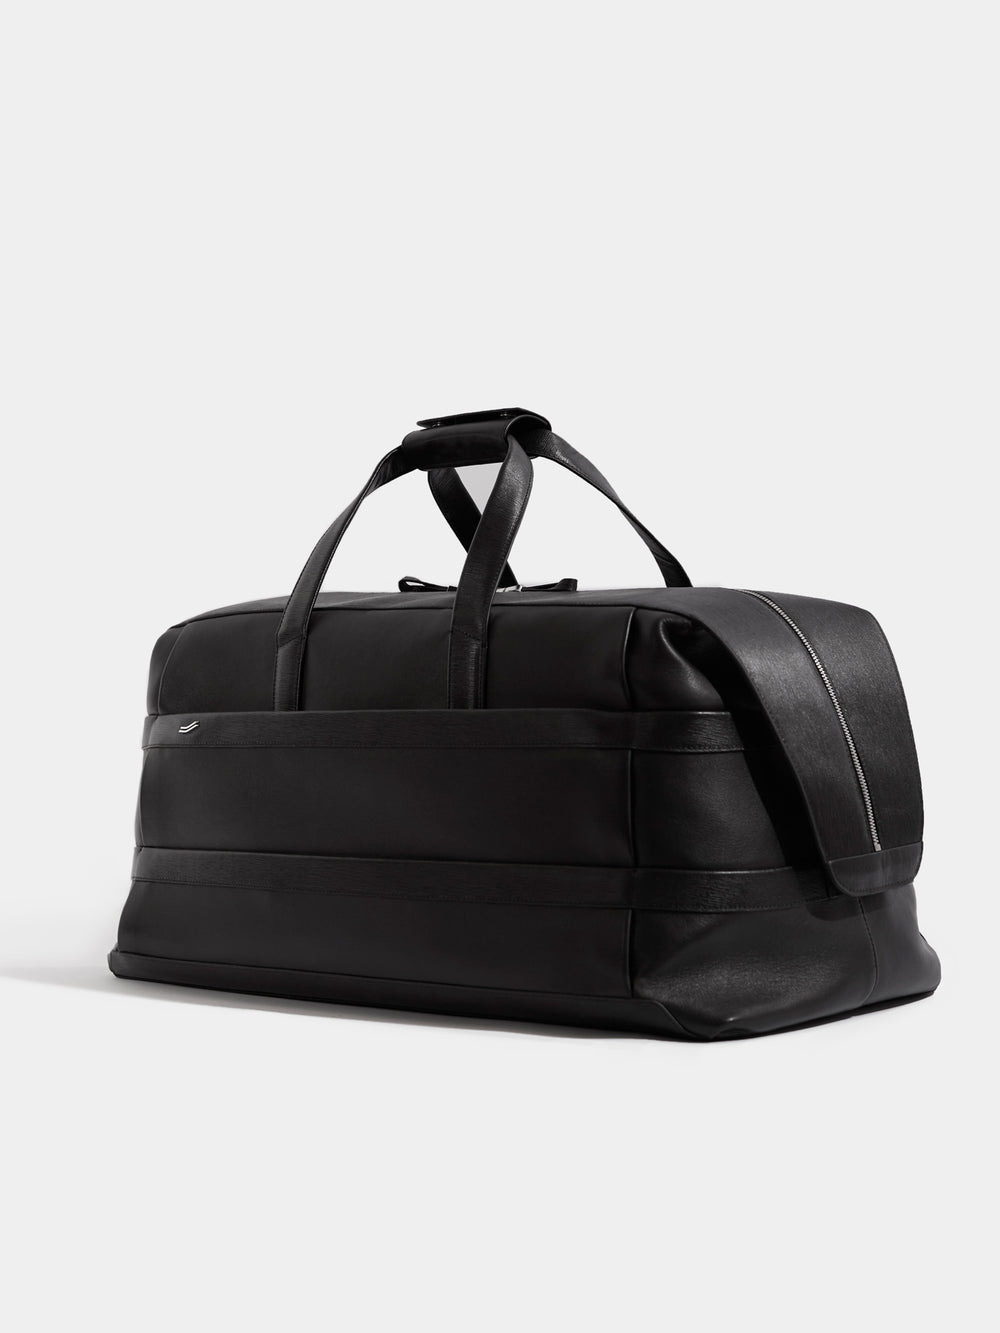 black leather large weekender bag side view reisetasche